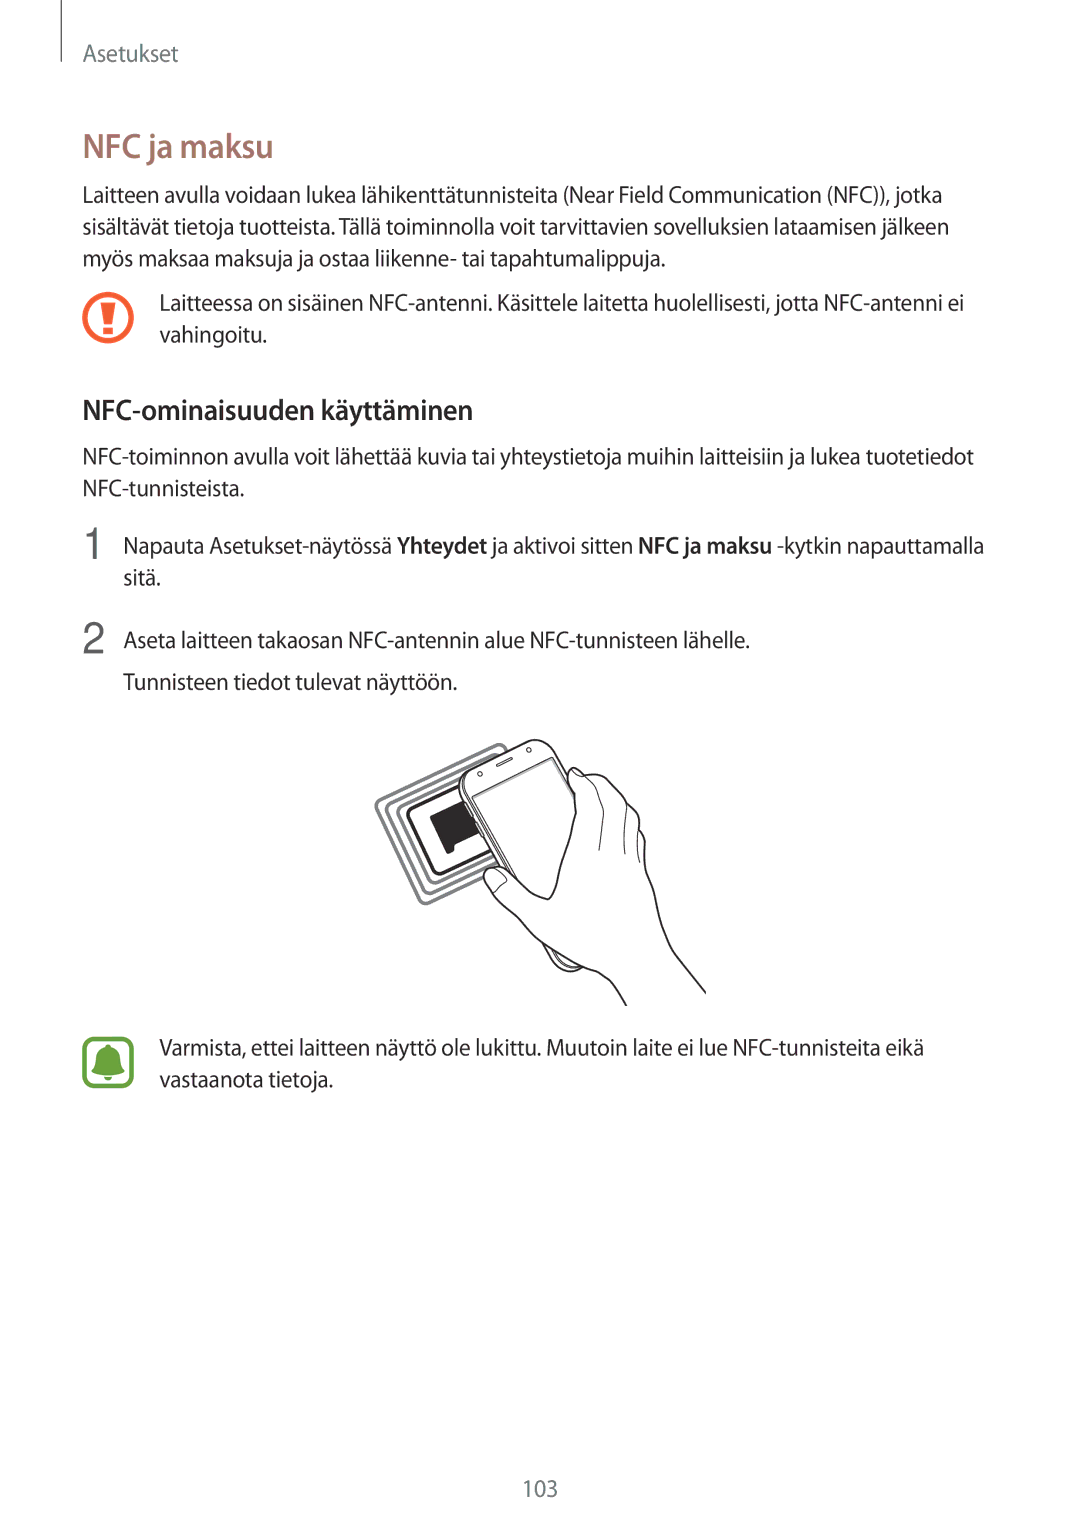 Samsung SM-J330FZKDNEE, SM-J330FZDDNEE, SM-J330FZSDNEE manual NFC ja maksu, NFC-ominaisuuden käyttäminen 